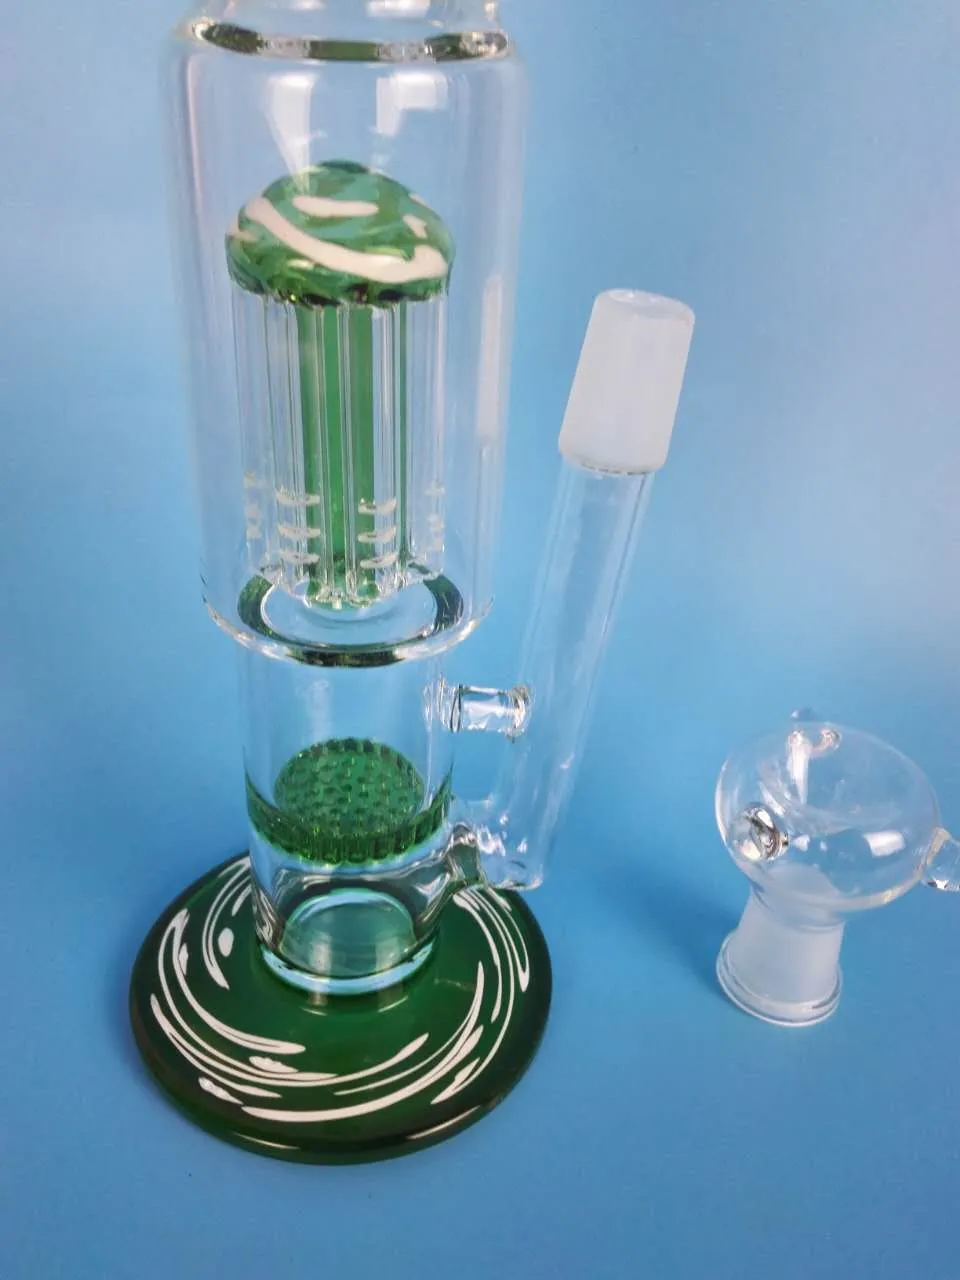 h: 34 Бесплатная доставка стеклянная вилка стеклянный сотовый фильтр стеклянный водопровод труба водопроводная труба качество бренда, h: 38 см d: 5cn / 4.5 см. зеленый